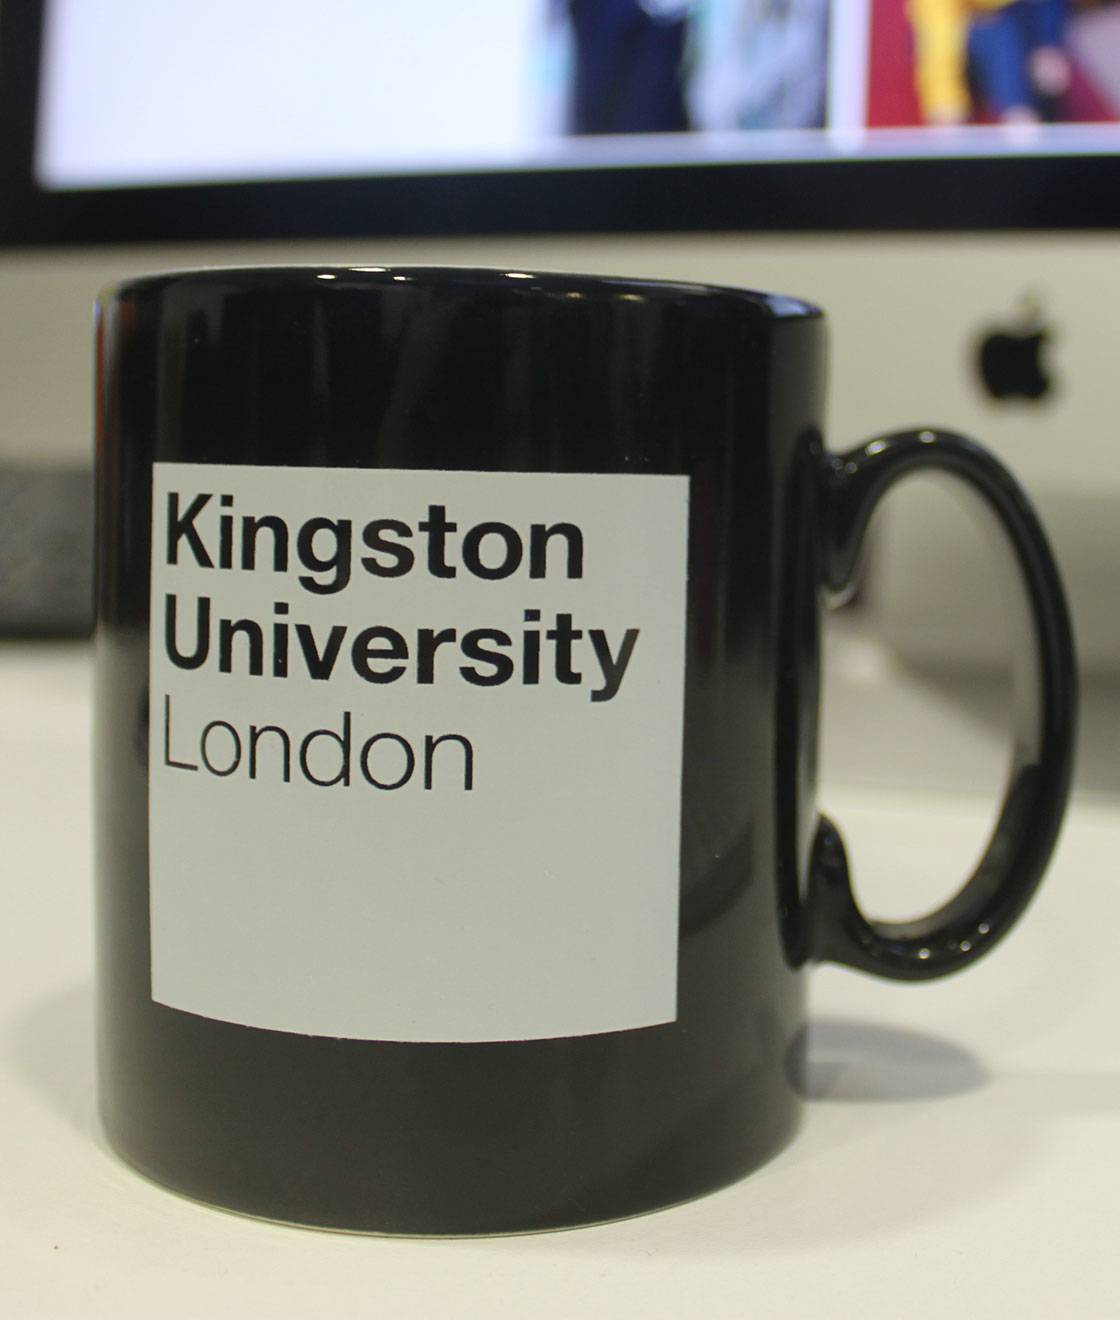 A black mug with a white Kingston University London logo